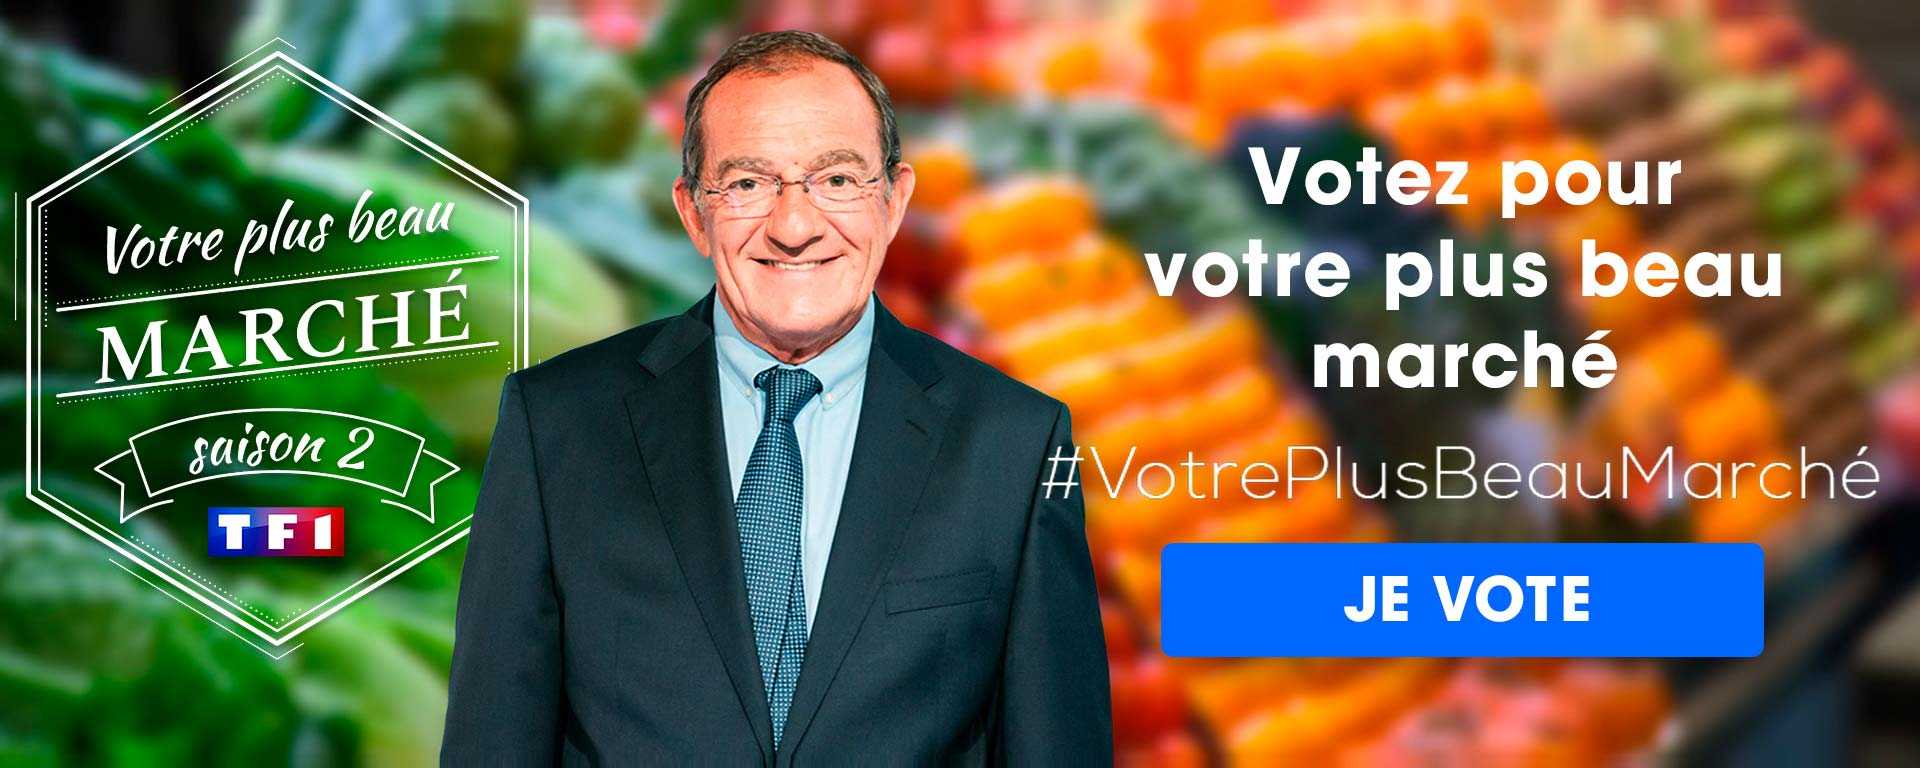 10 marchés du Nord-Pas-de-Calais ont été sélectionnés, à vous de voter pour celui qui nous représentera à l'élection nationale.